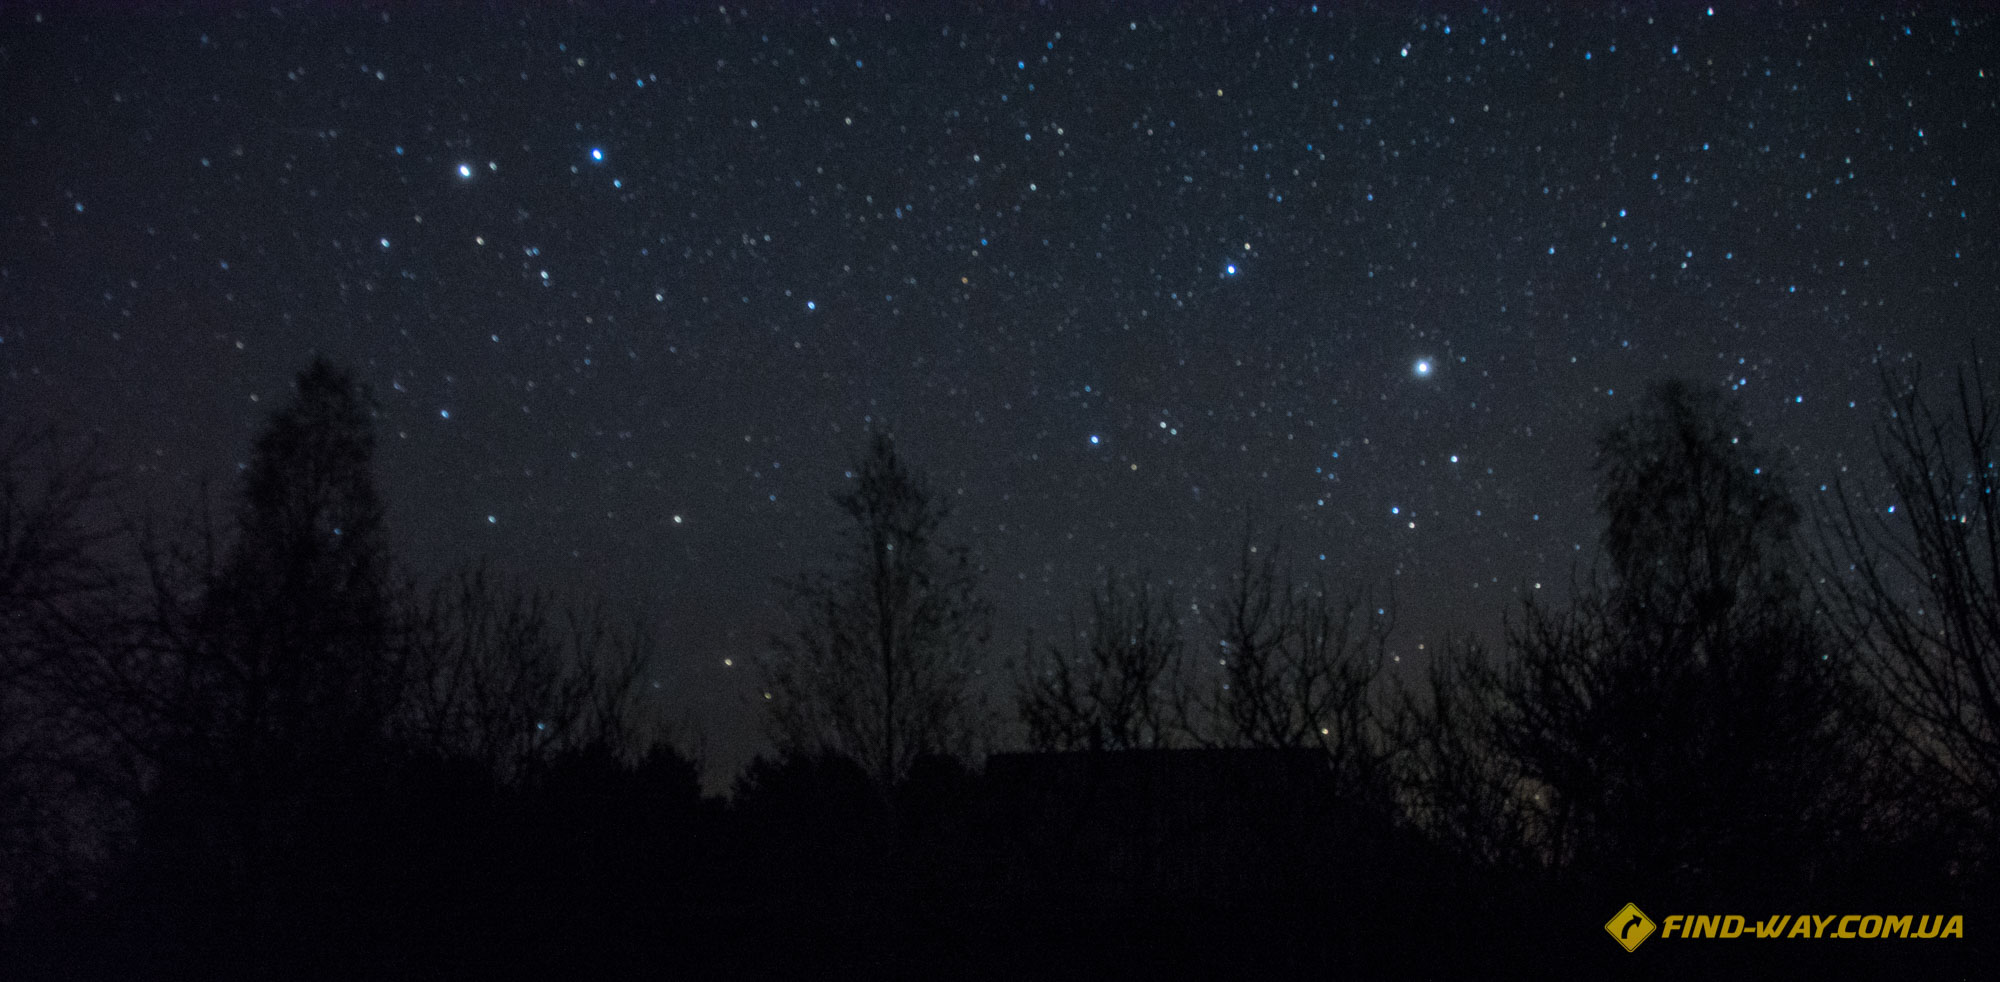  заброшенная деревня чернобыля ночью звезды в зоне отчуждения фотографии